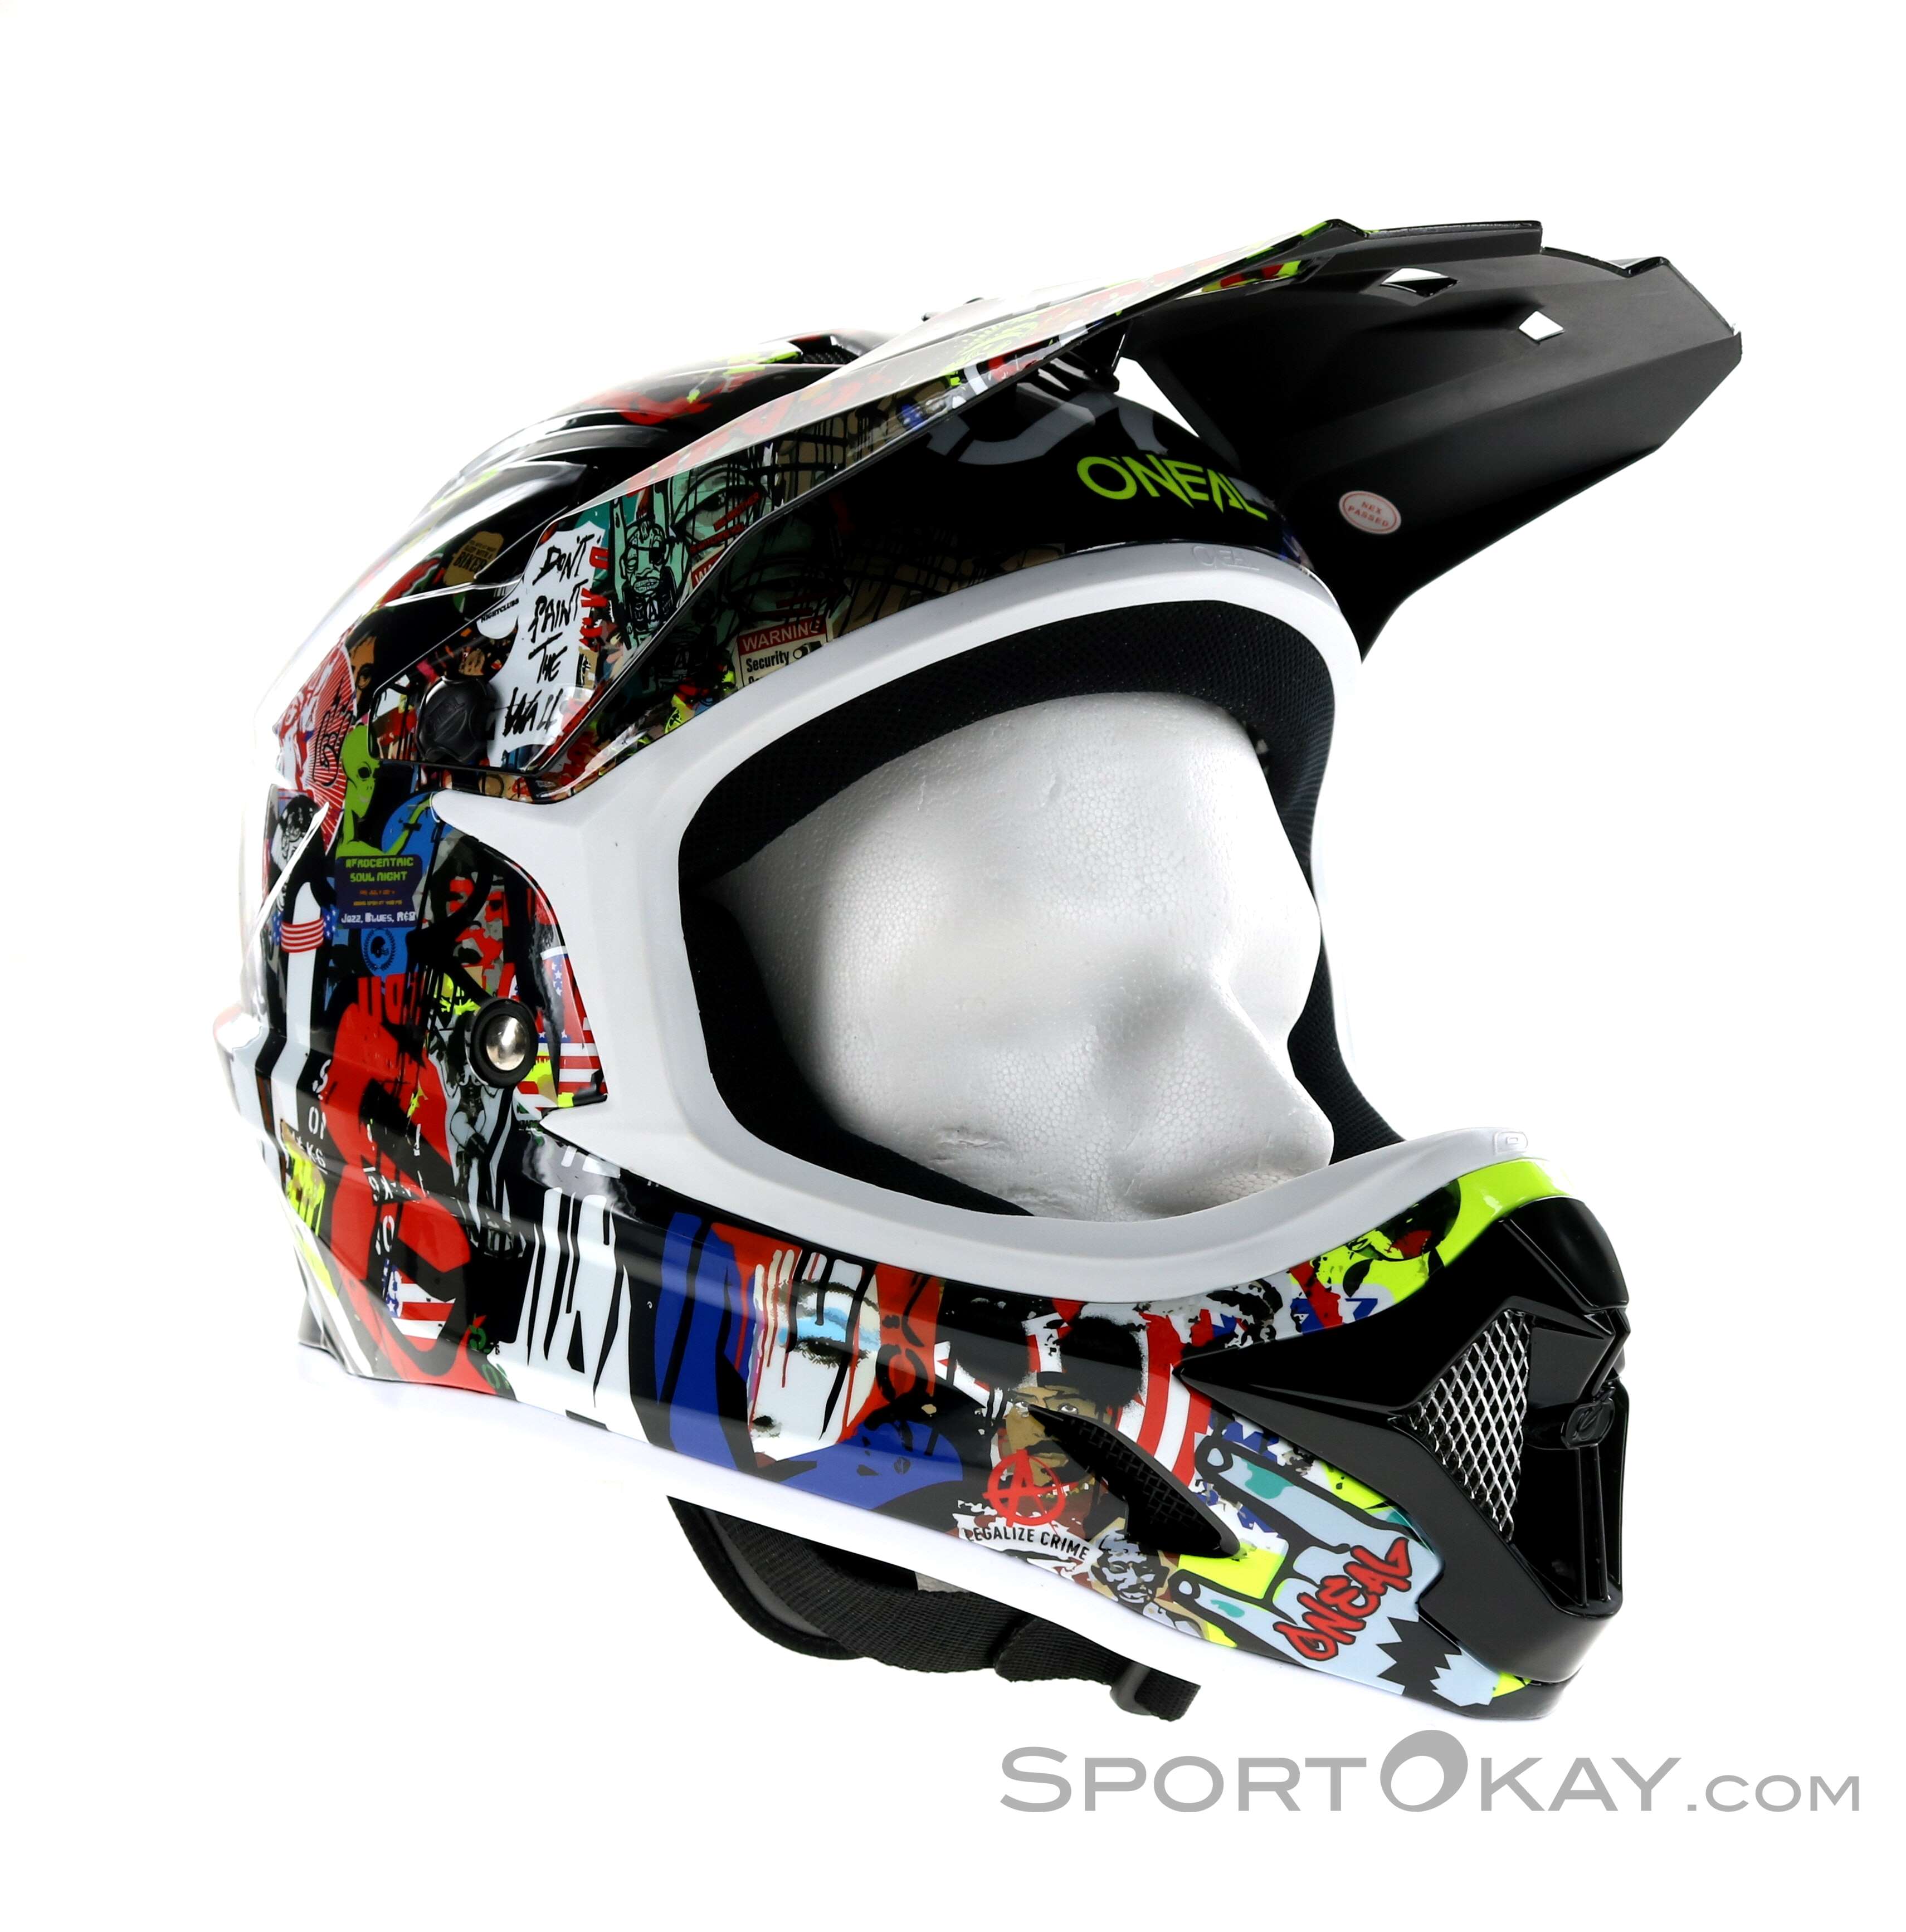 Oneal 3 Series Rancid Motocross Helmet